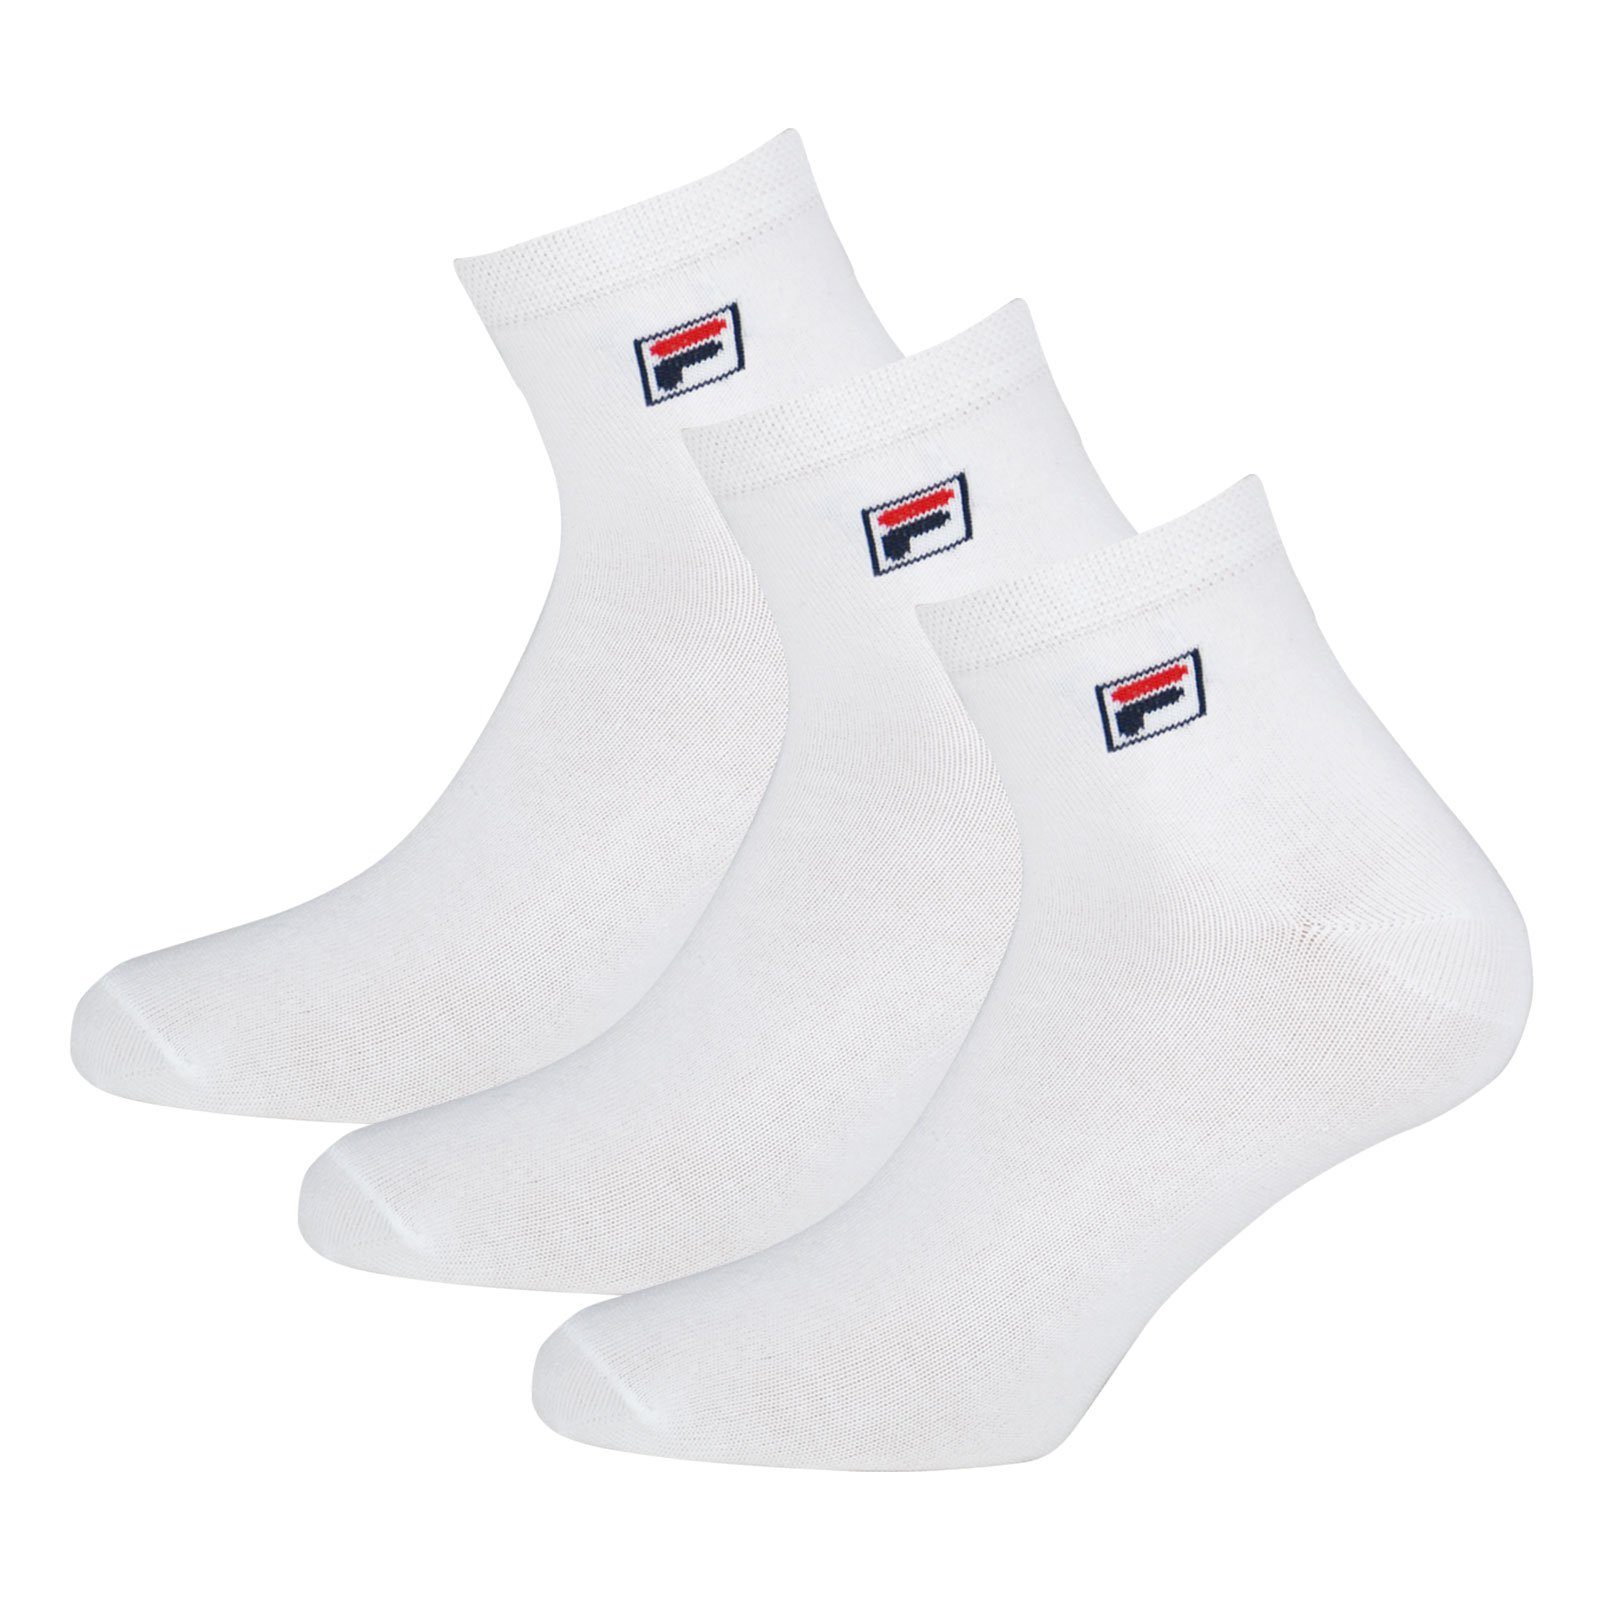 Socken 300 Quarter mit Sportsocken elastischem Fila Piquebund white (12-Paar)